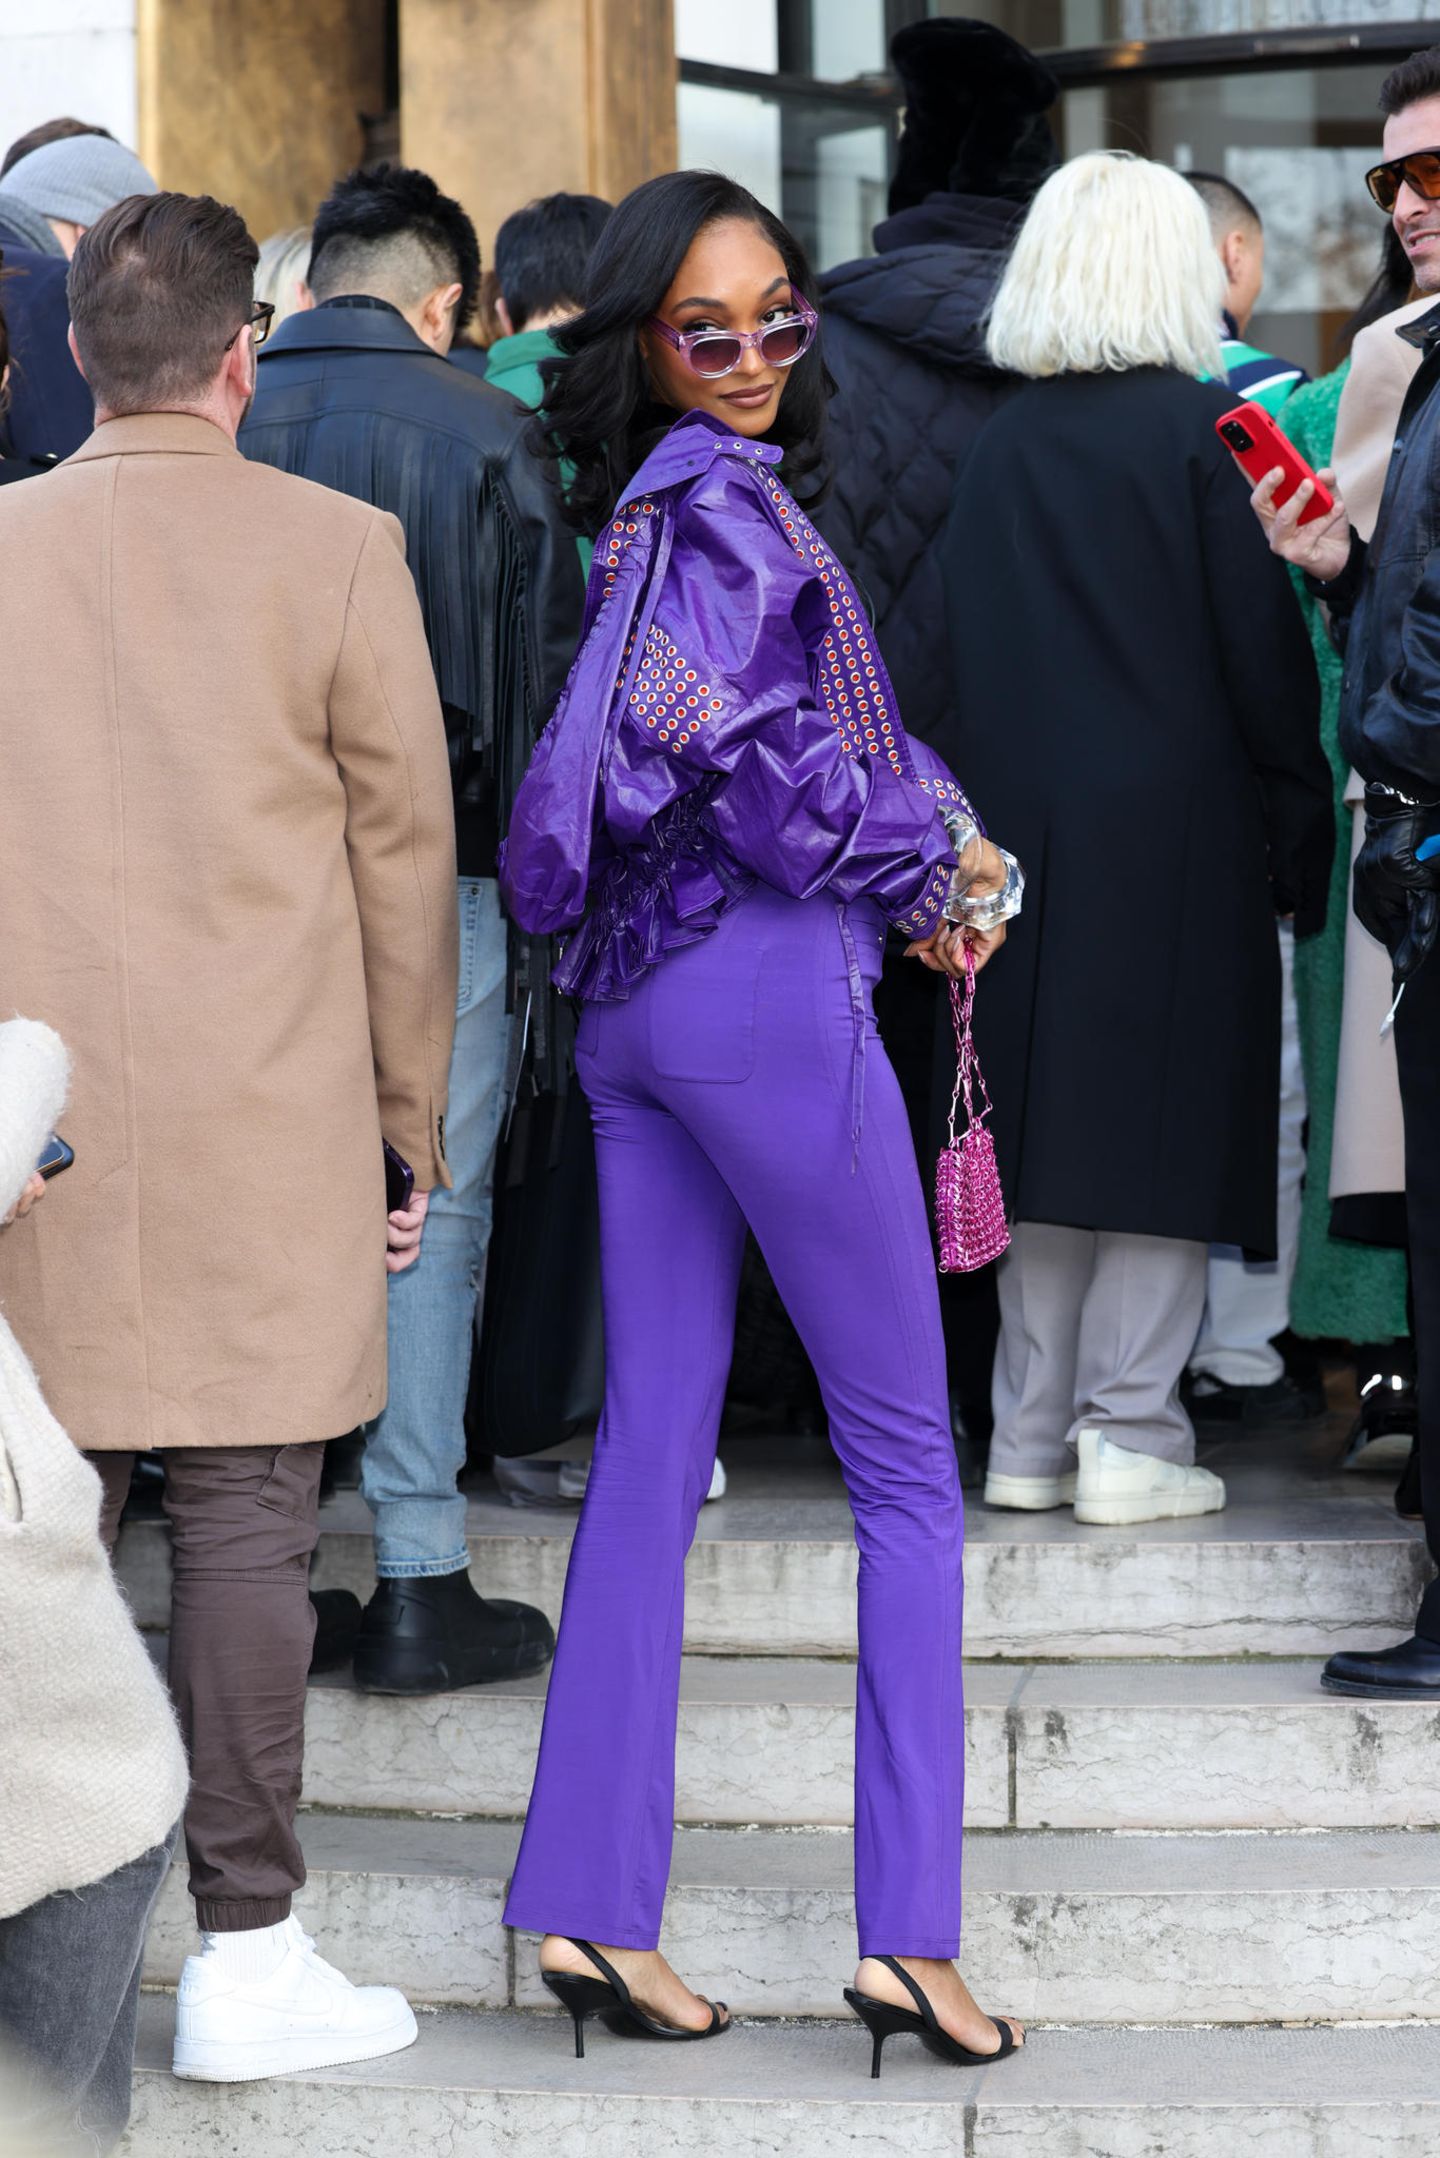 Sie hat den Fashion-Durchblick. Jourdan Dunn erscheint zur Show von Pacco Rabanne am dritten Tag der Pariser Fashion Week in einem lilafarbenen Ensemble aus Lederjacke, Jeans und Sonnenbrille. Kleine Heels in Schwarz und eine pinkfarbene Perlentasche runden den Girly-Look ab.